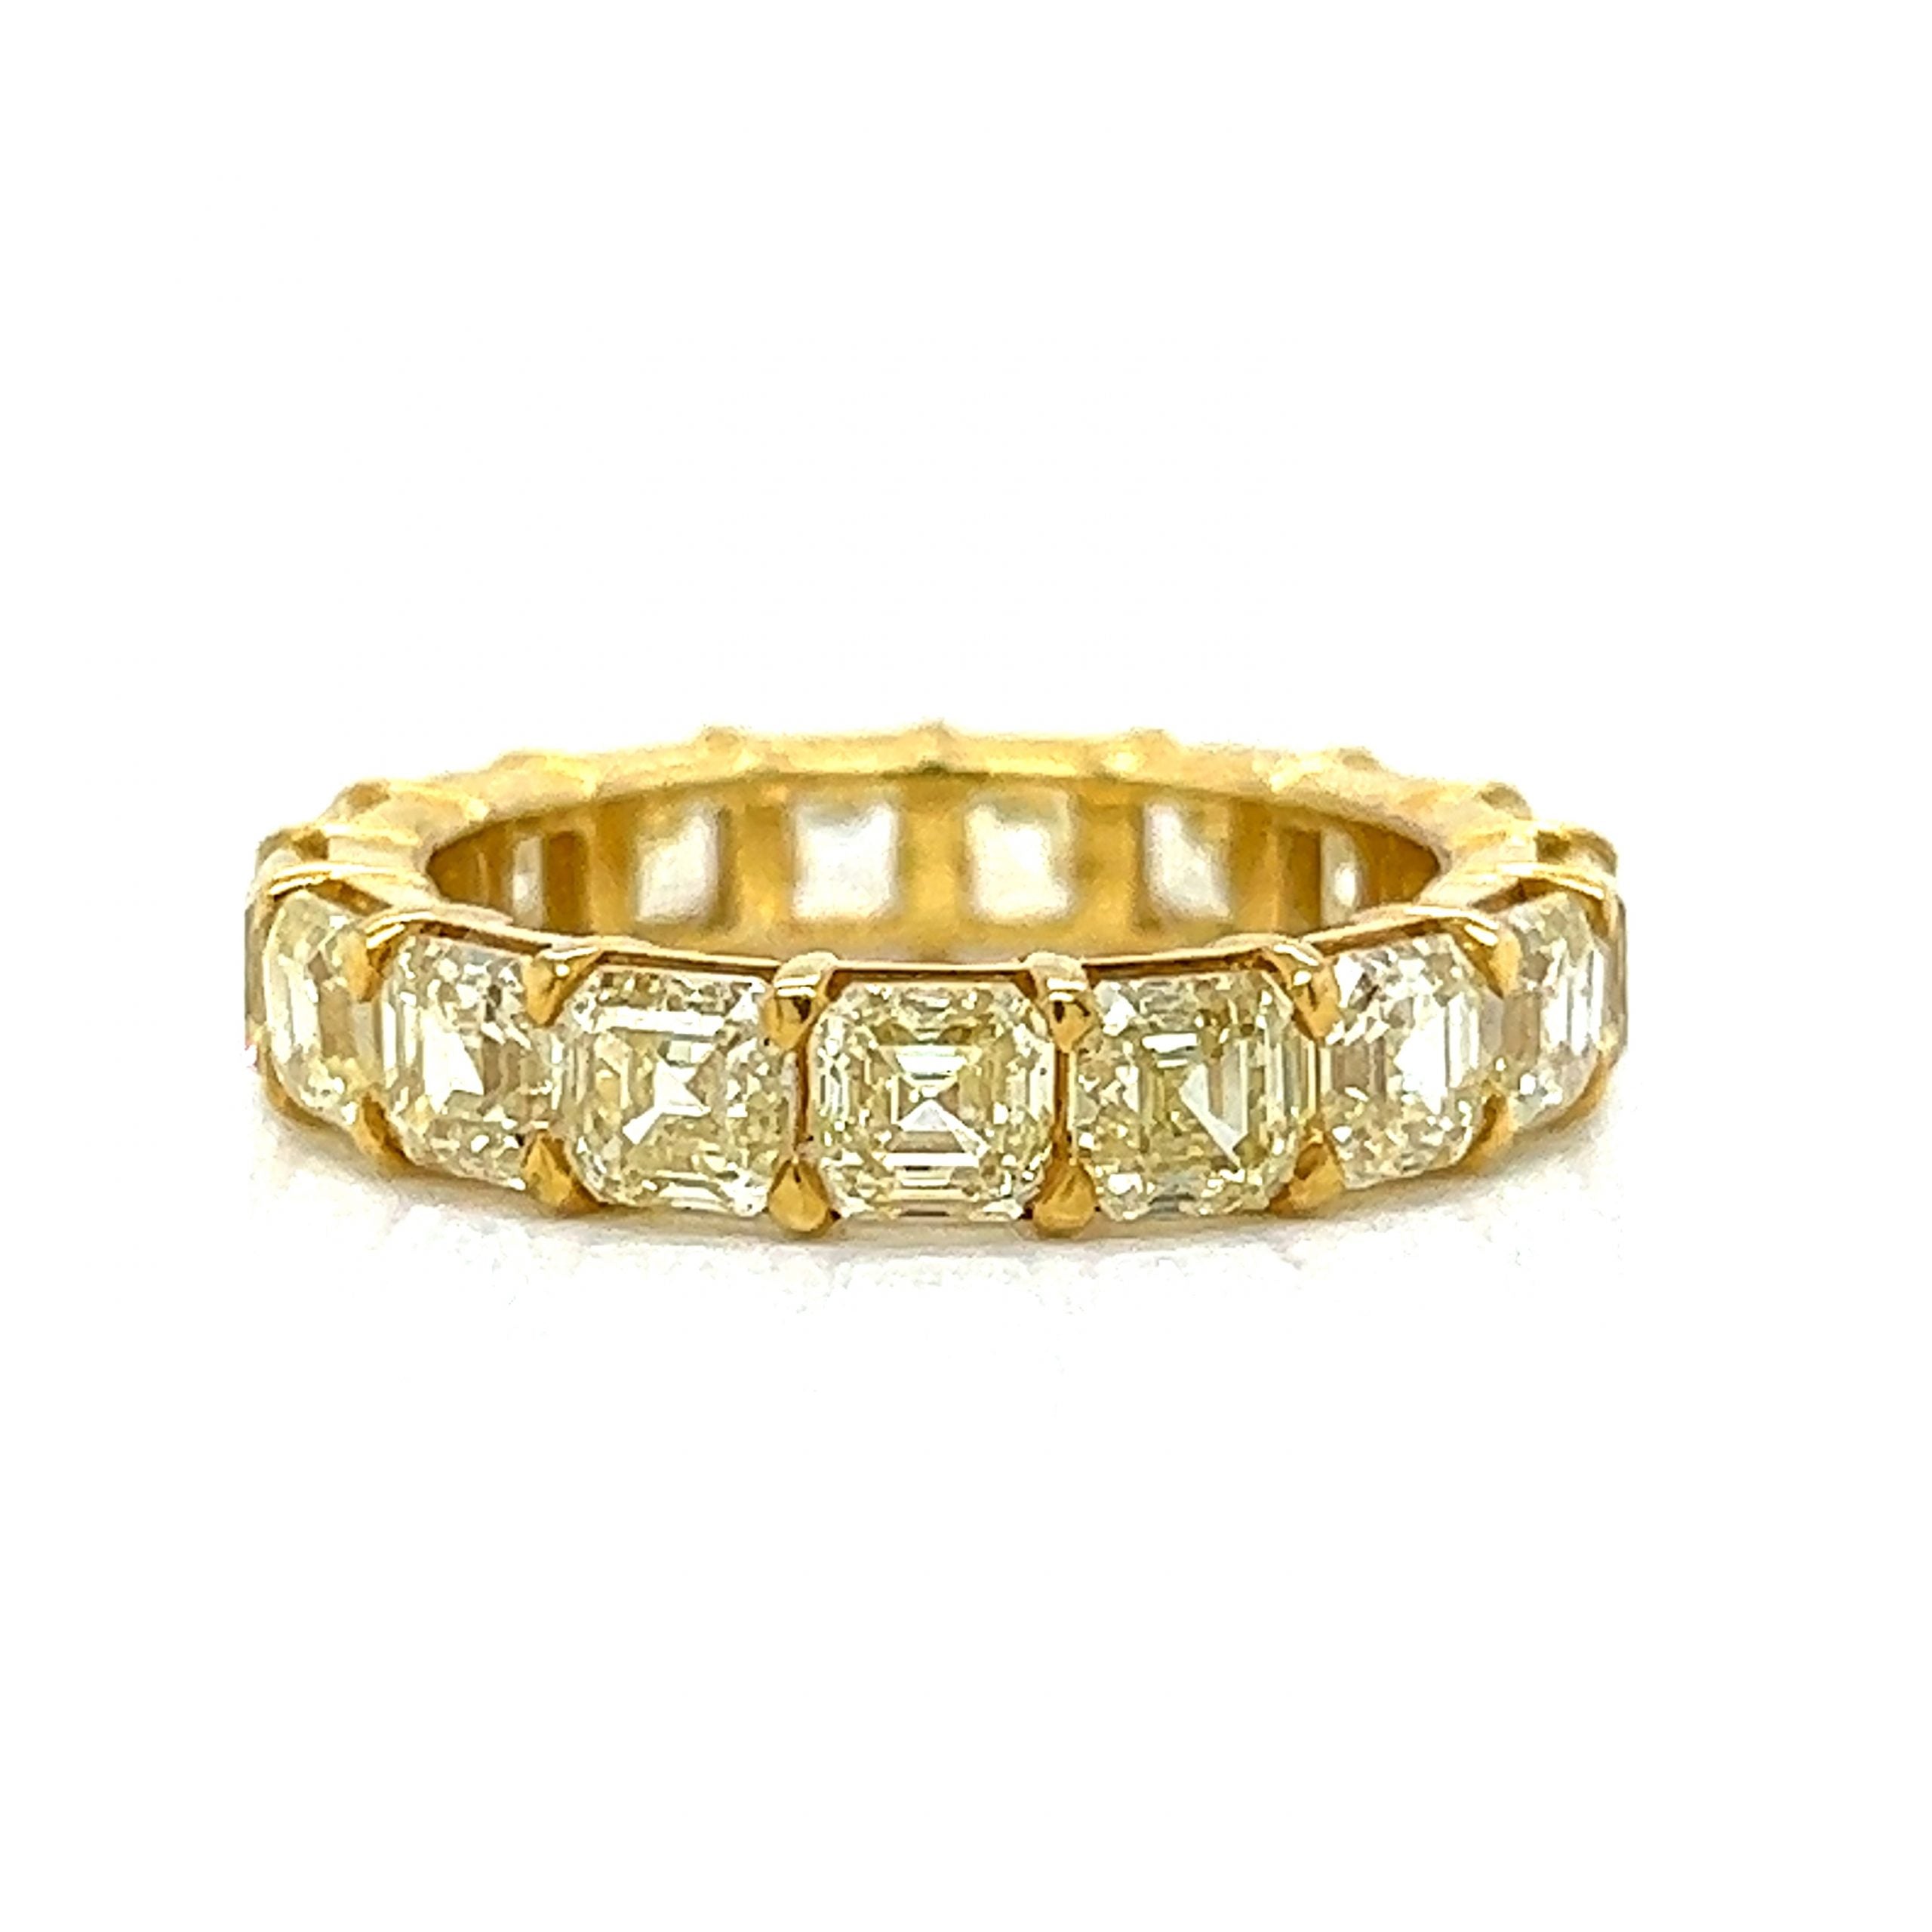 Gemstone Wedding Ring Band | Carbon Wedding Ring Band | Gemstone Asscher |  Carbon Asscher - Rings - Aliexpress